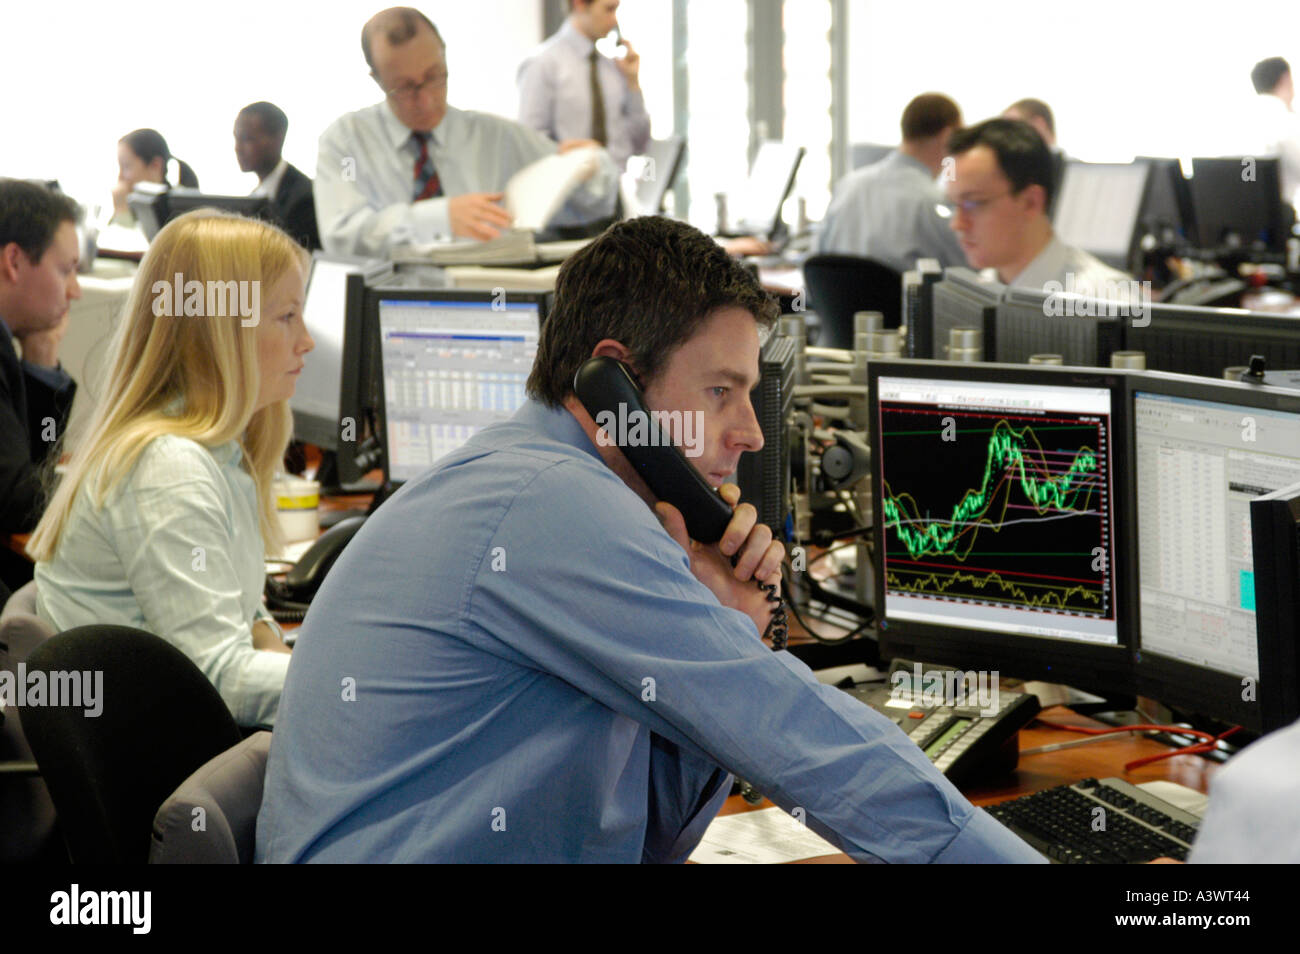 Cambio operatore guardando gli schermi dei computer di trading floor, City of London, England, Regno Unito Foto Stock